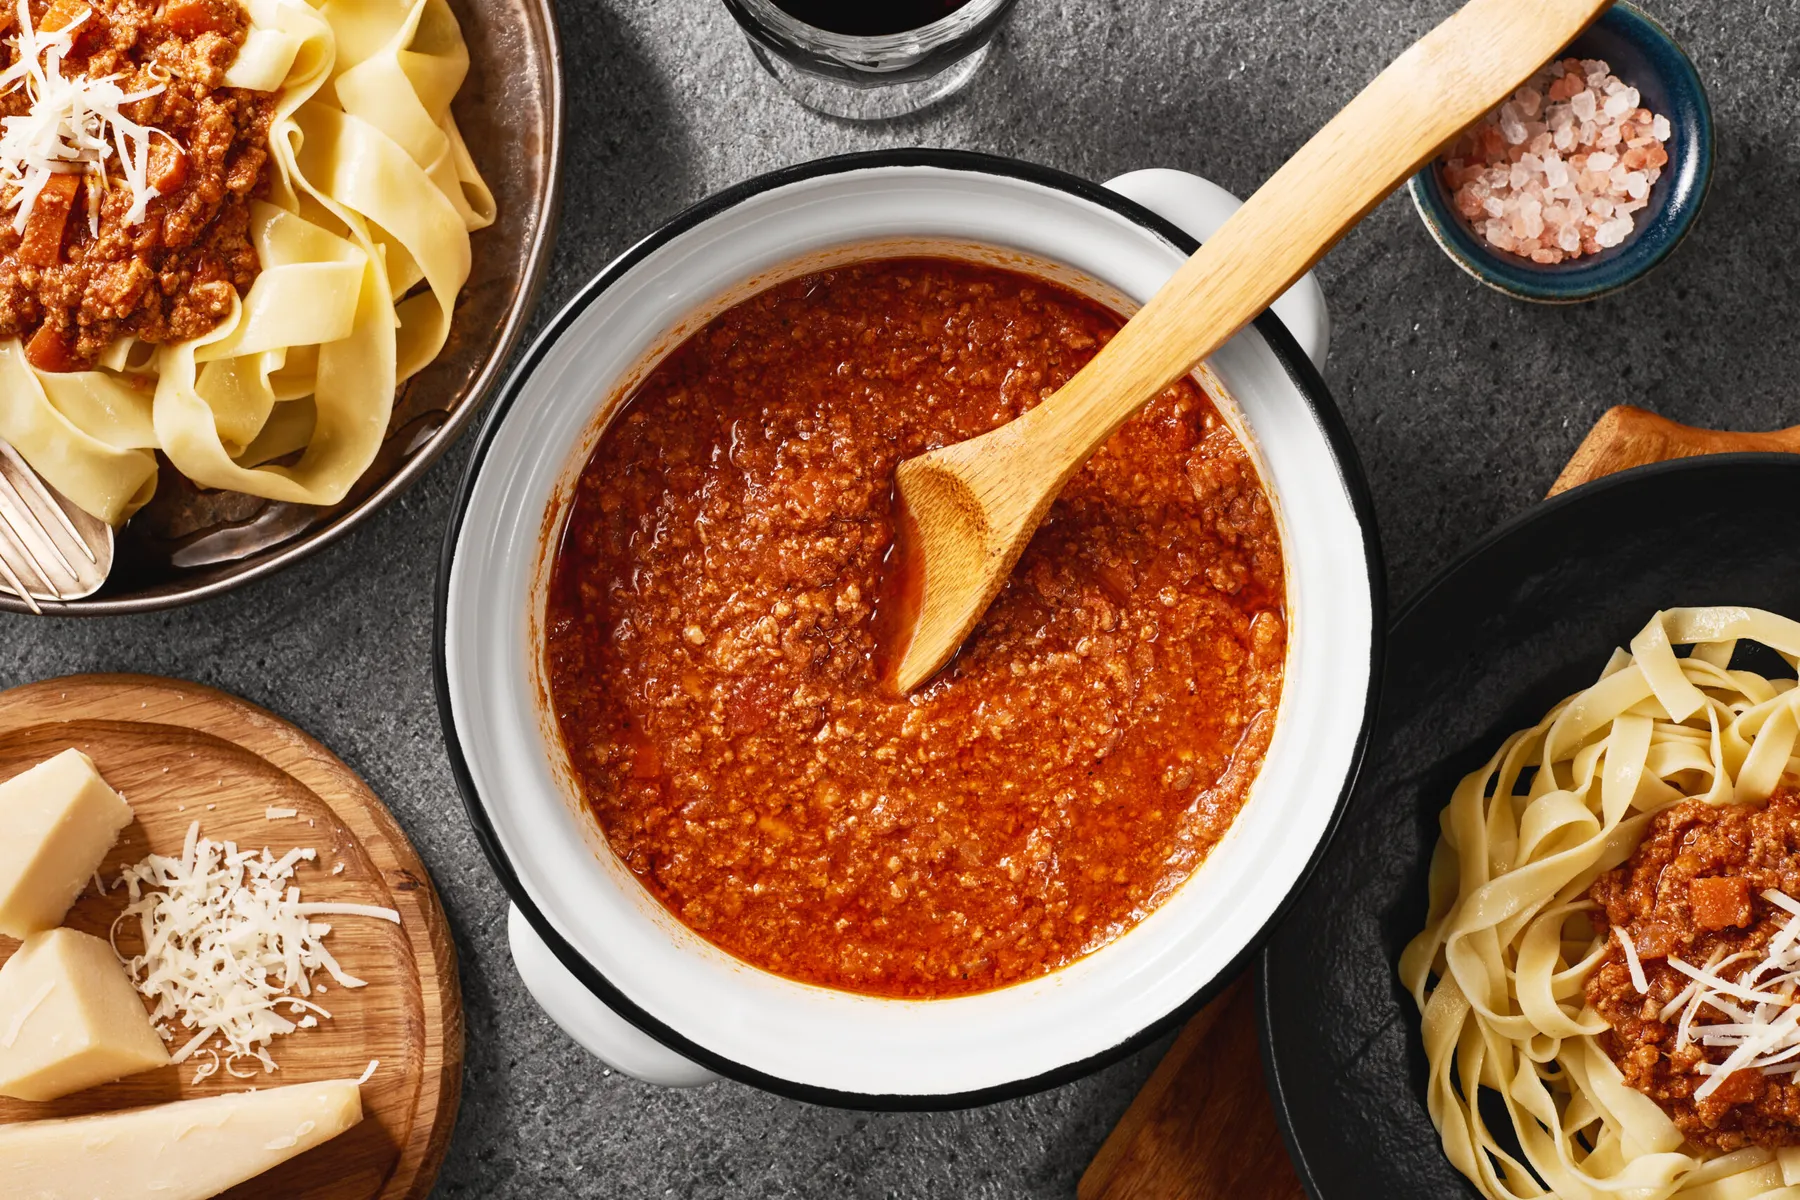 Sauce bolognaise : zoom sur la recette traditionnelle - Panzani